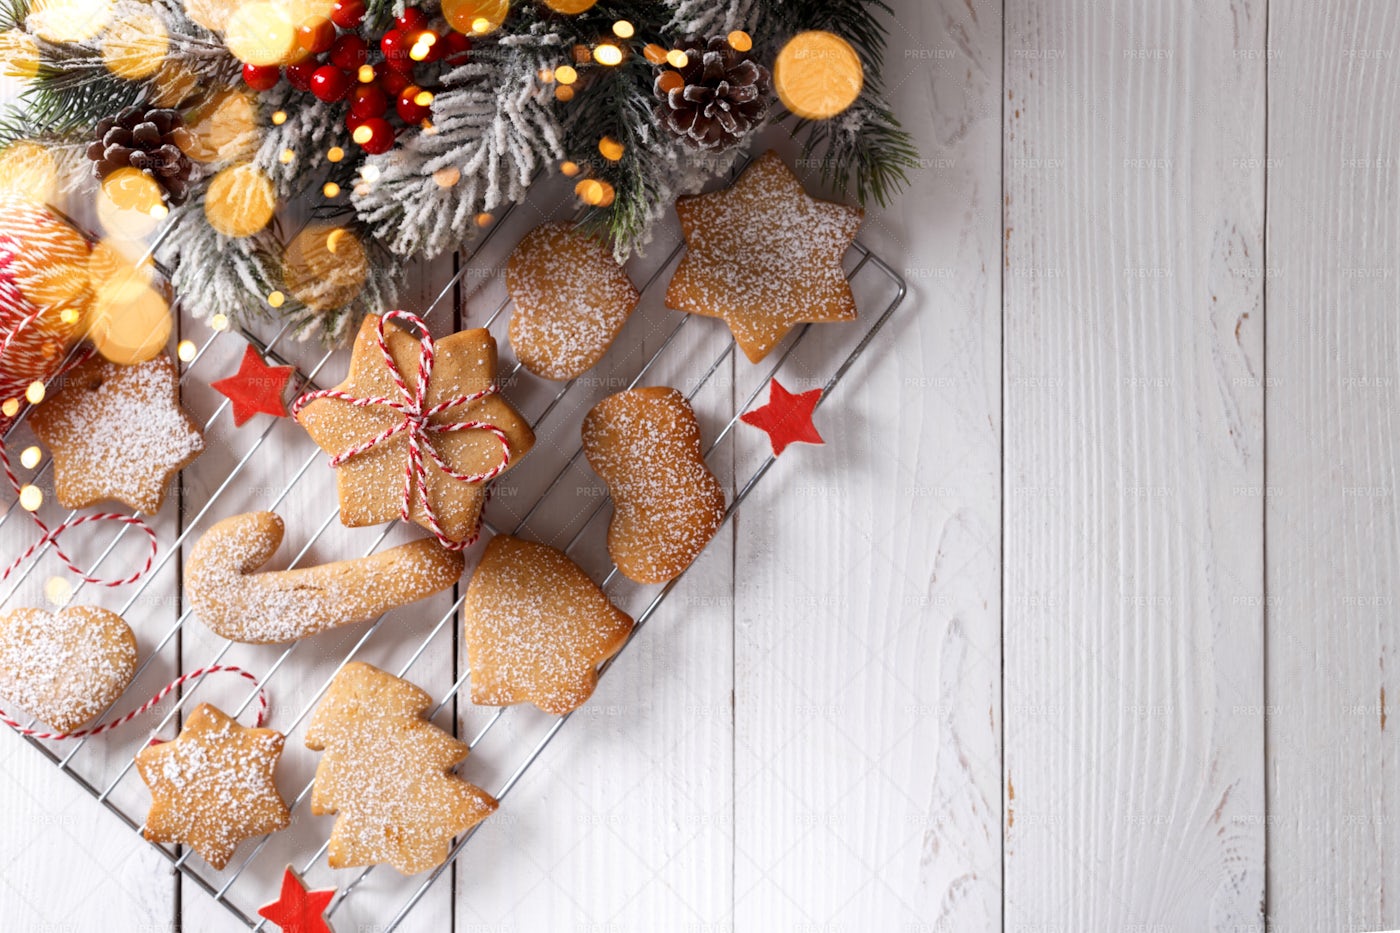 Christmas Shortbread Or Gingerbread Cook: Stock Photos